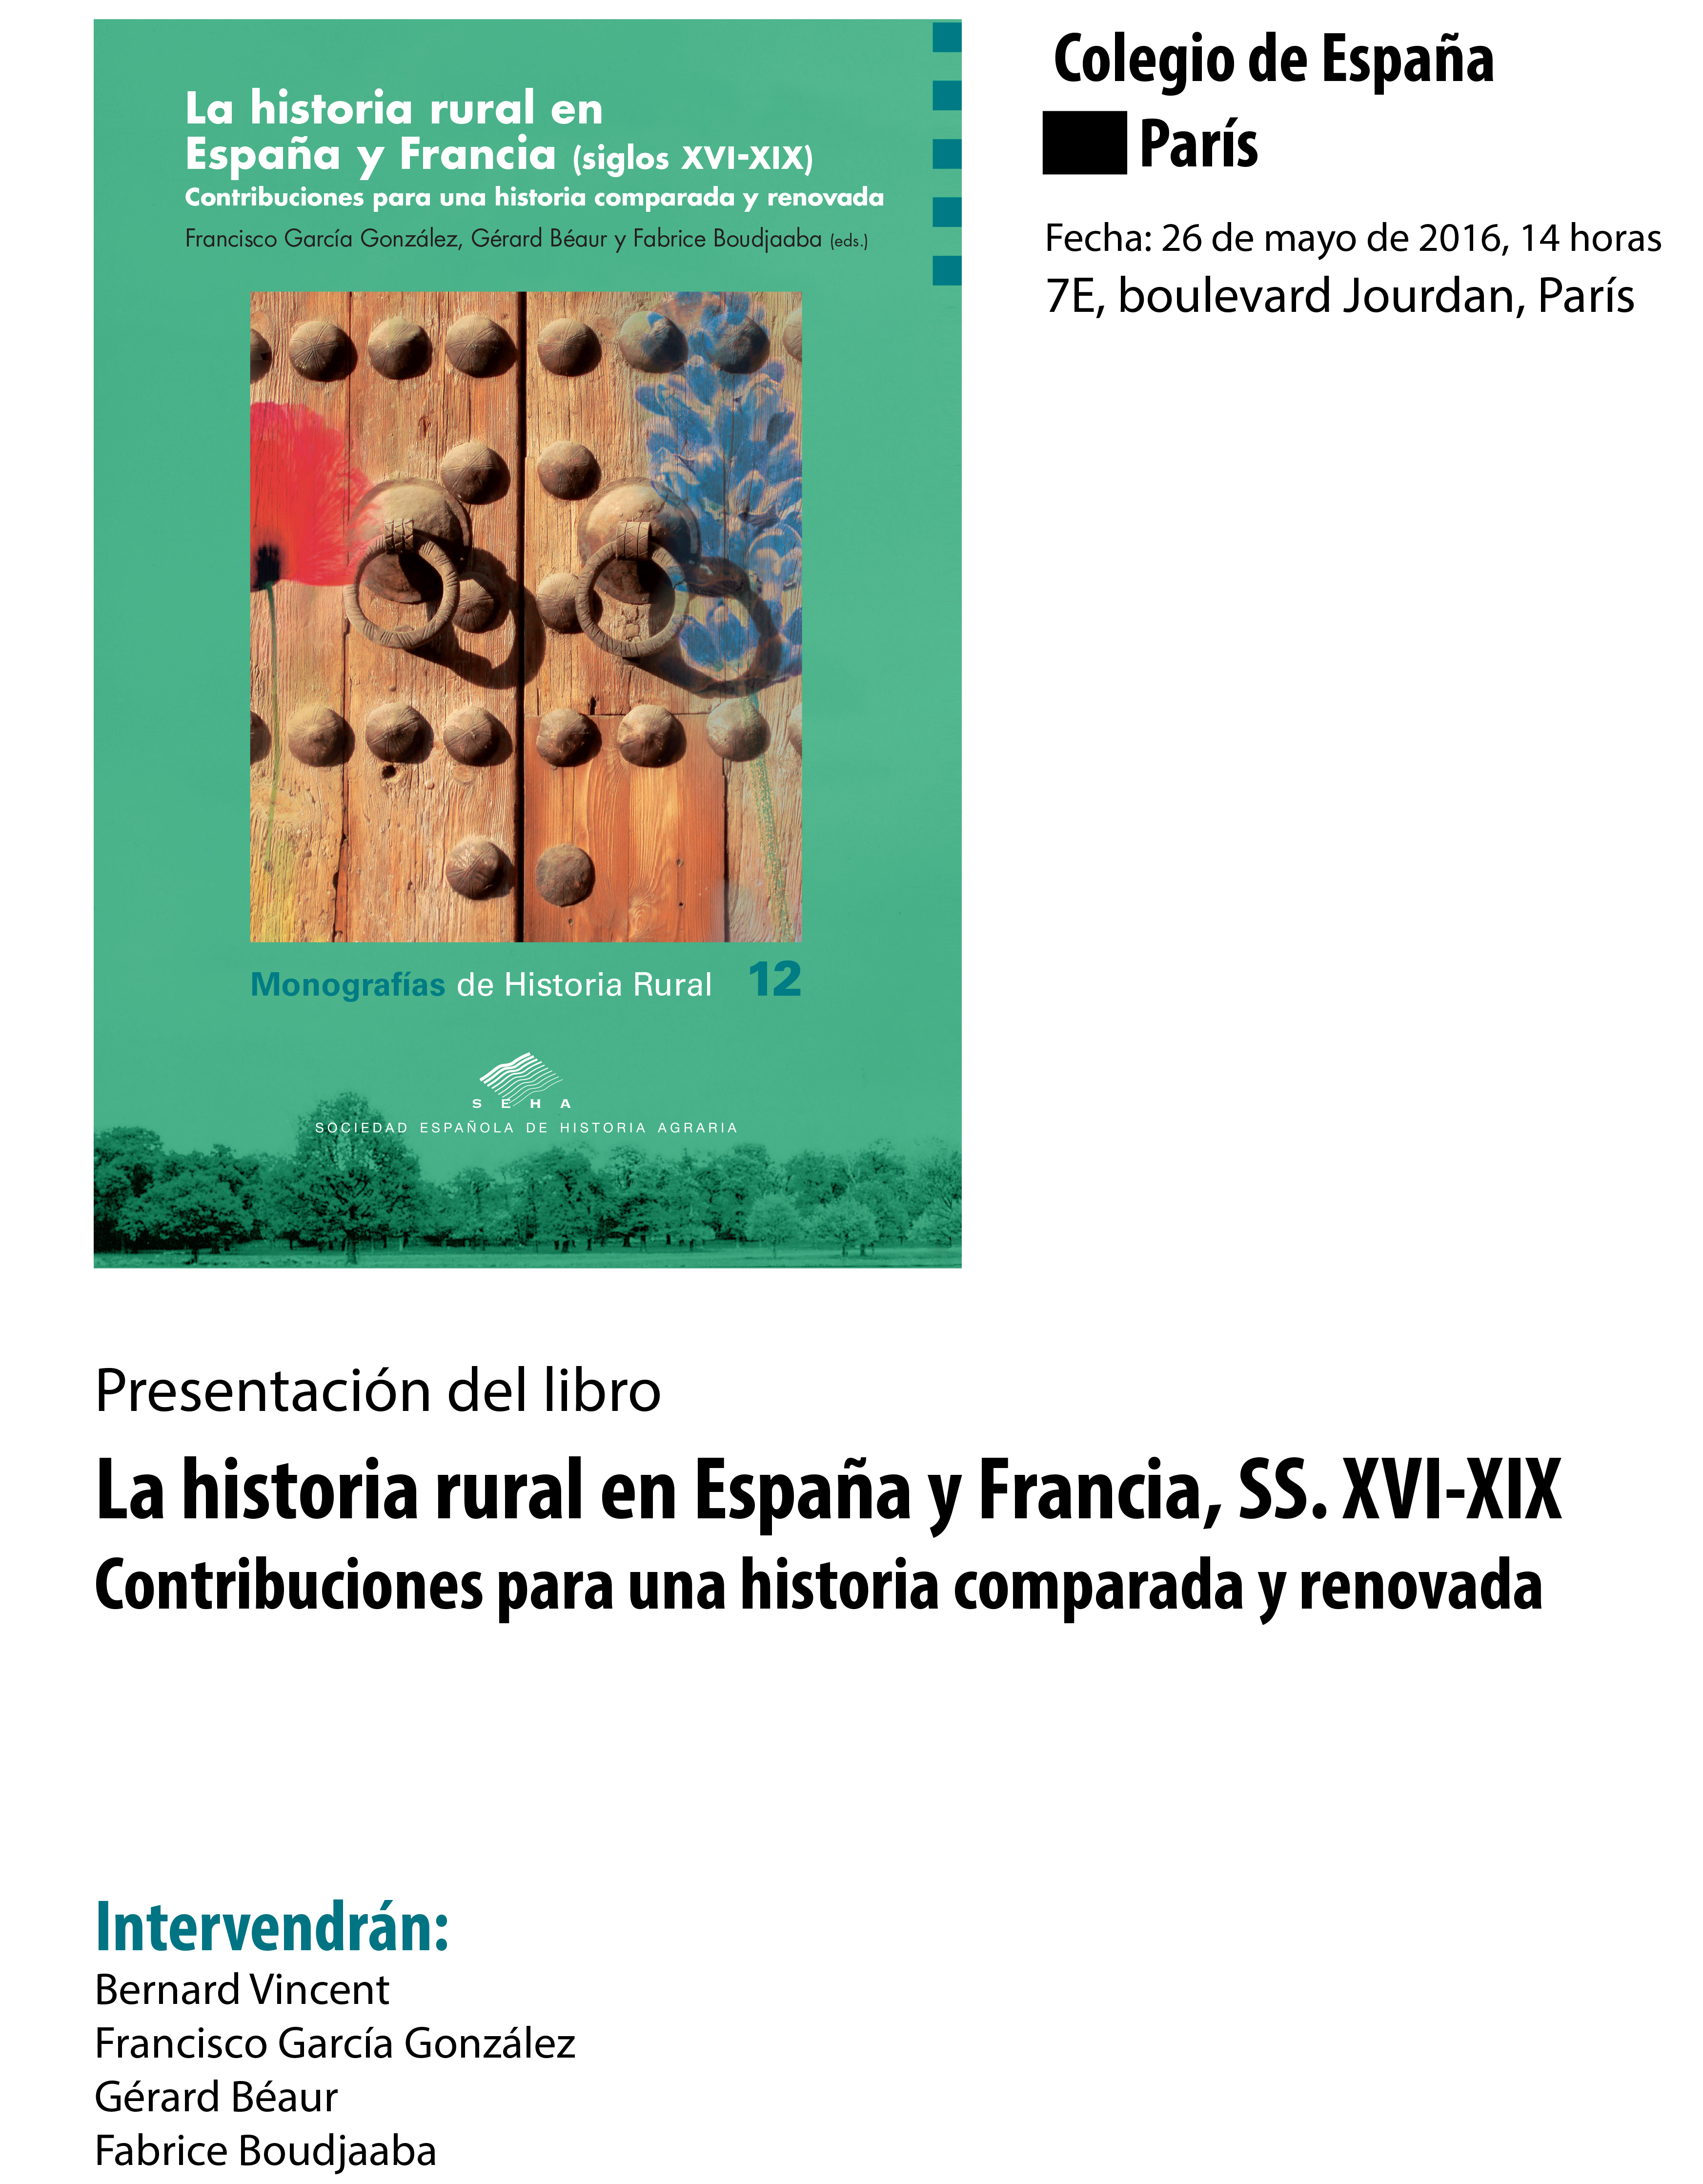 Présentation de l'ouvrage La historia rural en España y Francia (siglos XVI-XIX) Contribuciones para una historia comparada y renovada